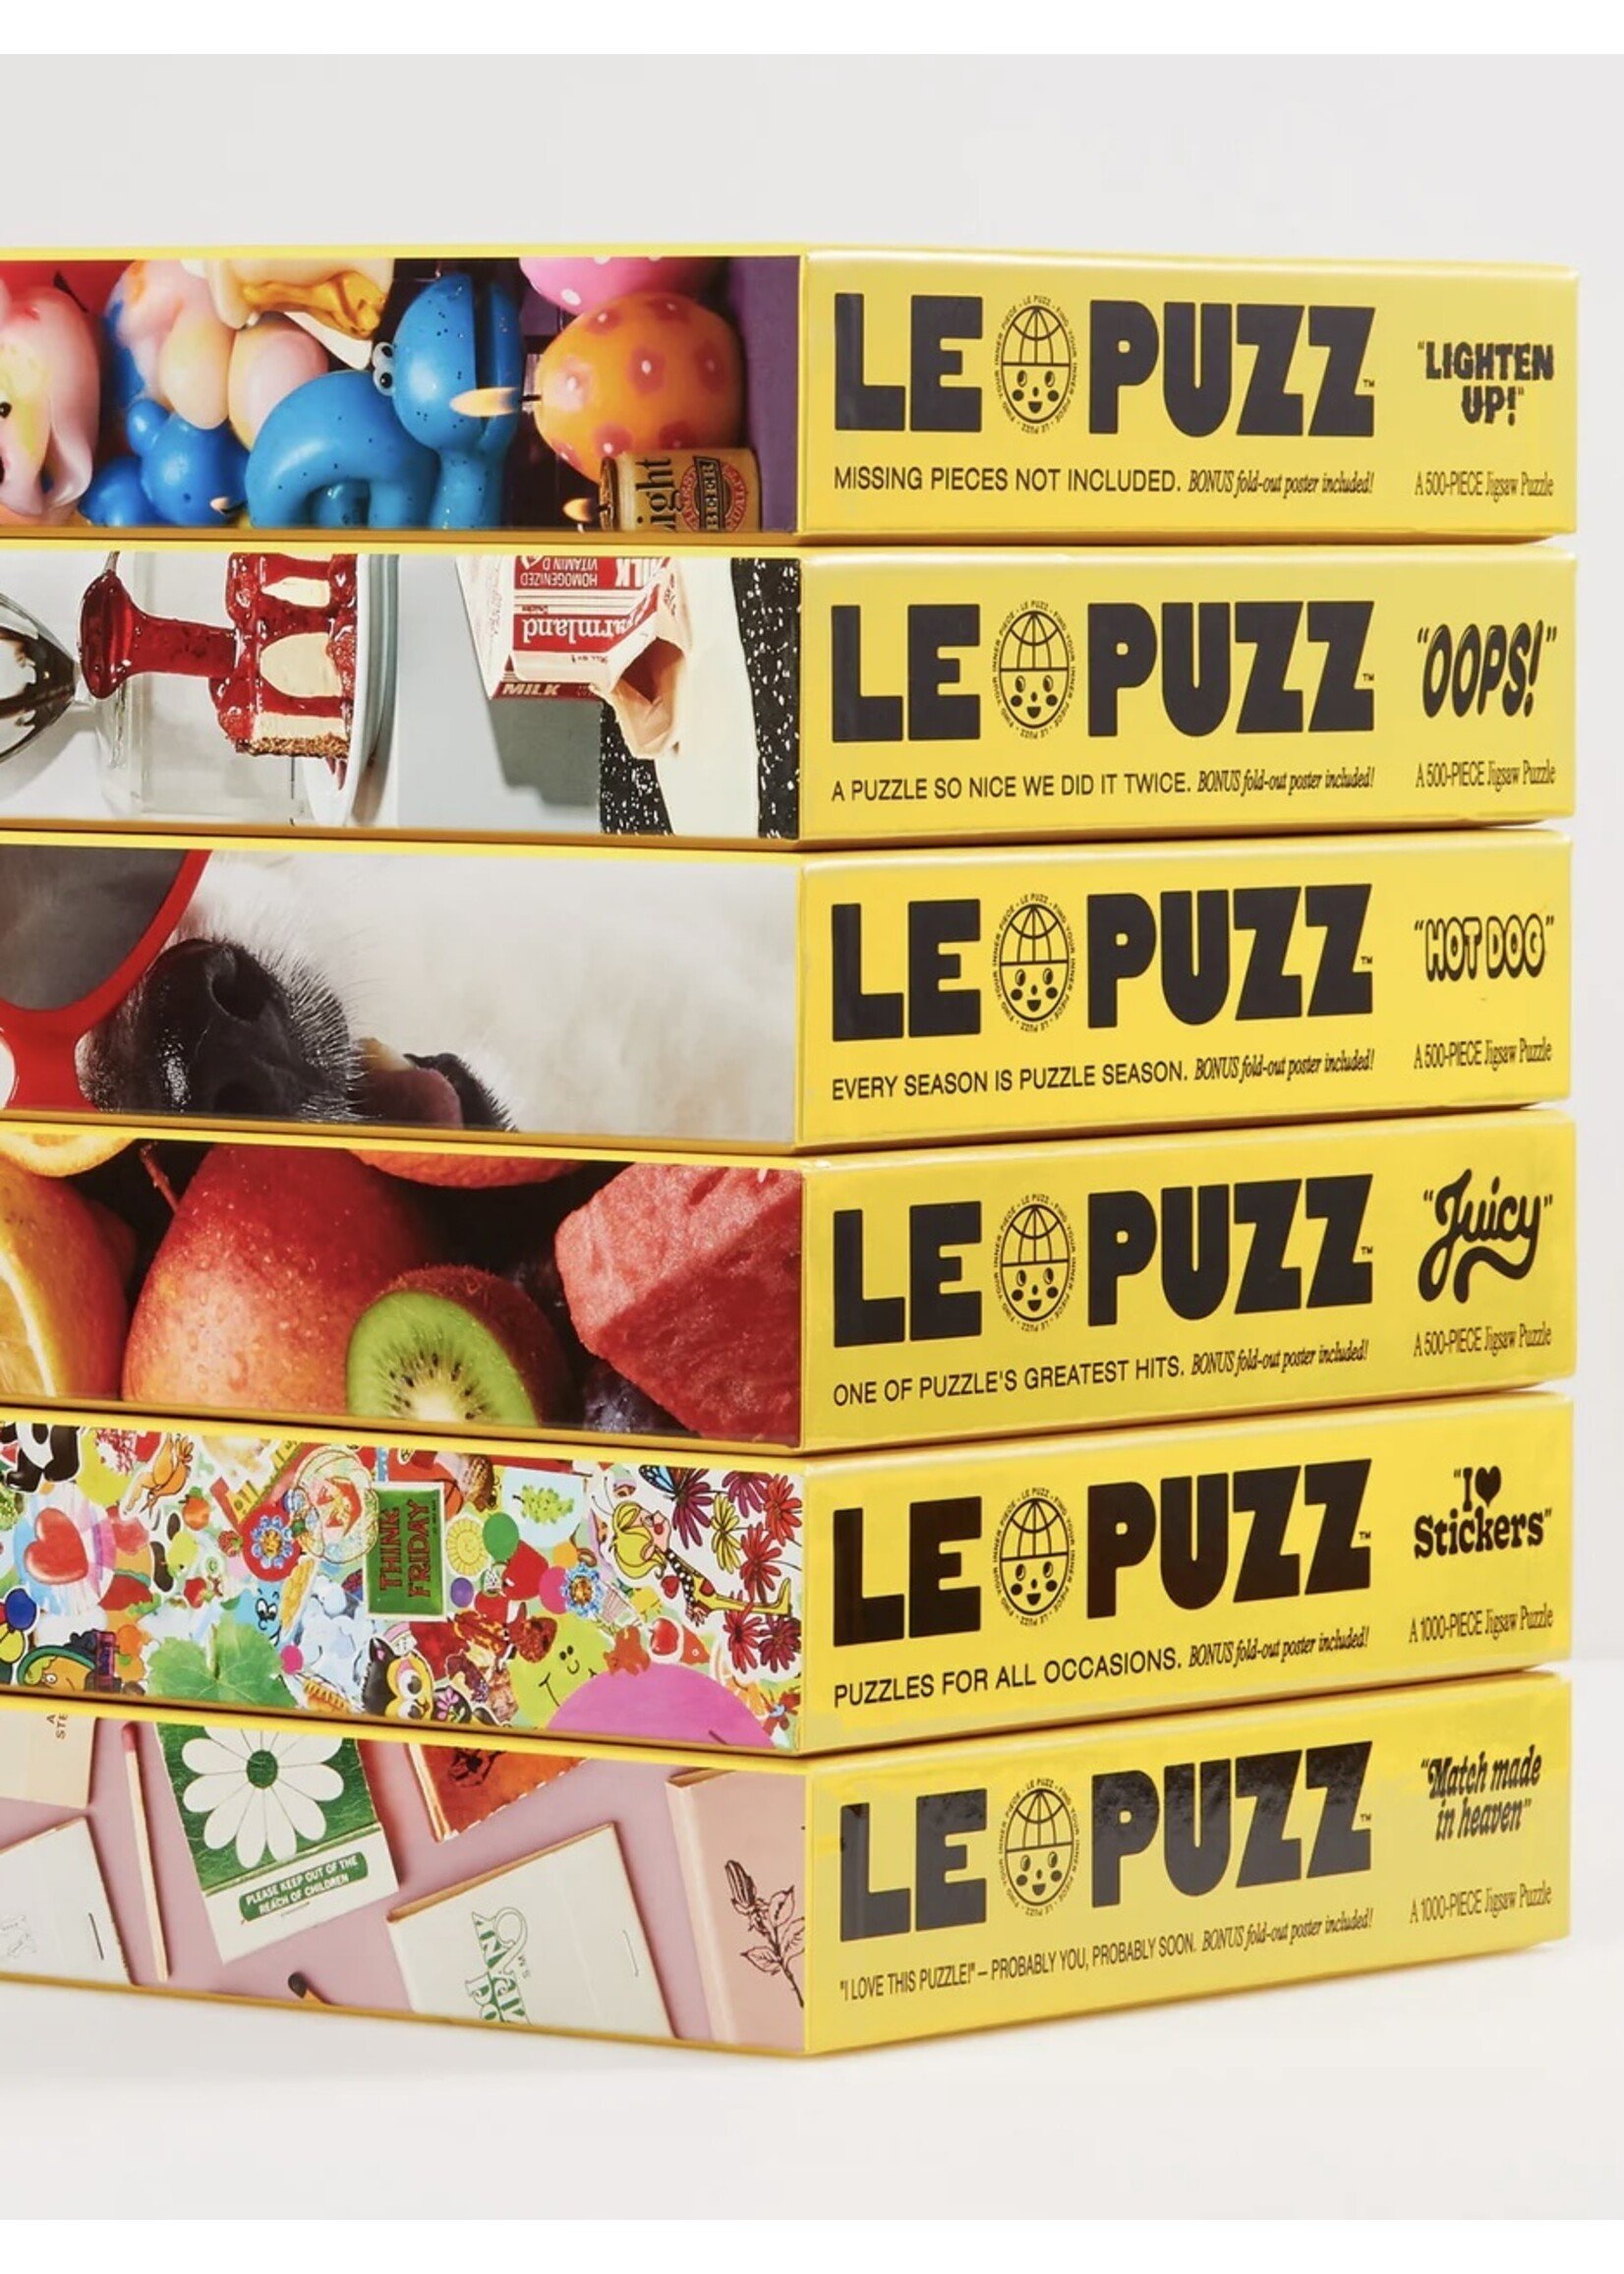 Le Puzz Puzzles "500 pieces" by LE PUZZ